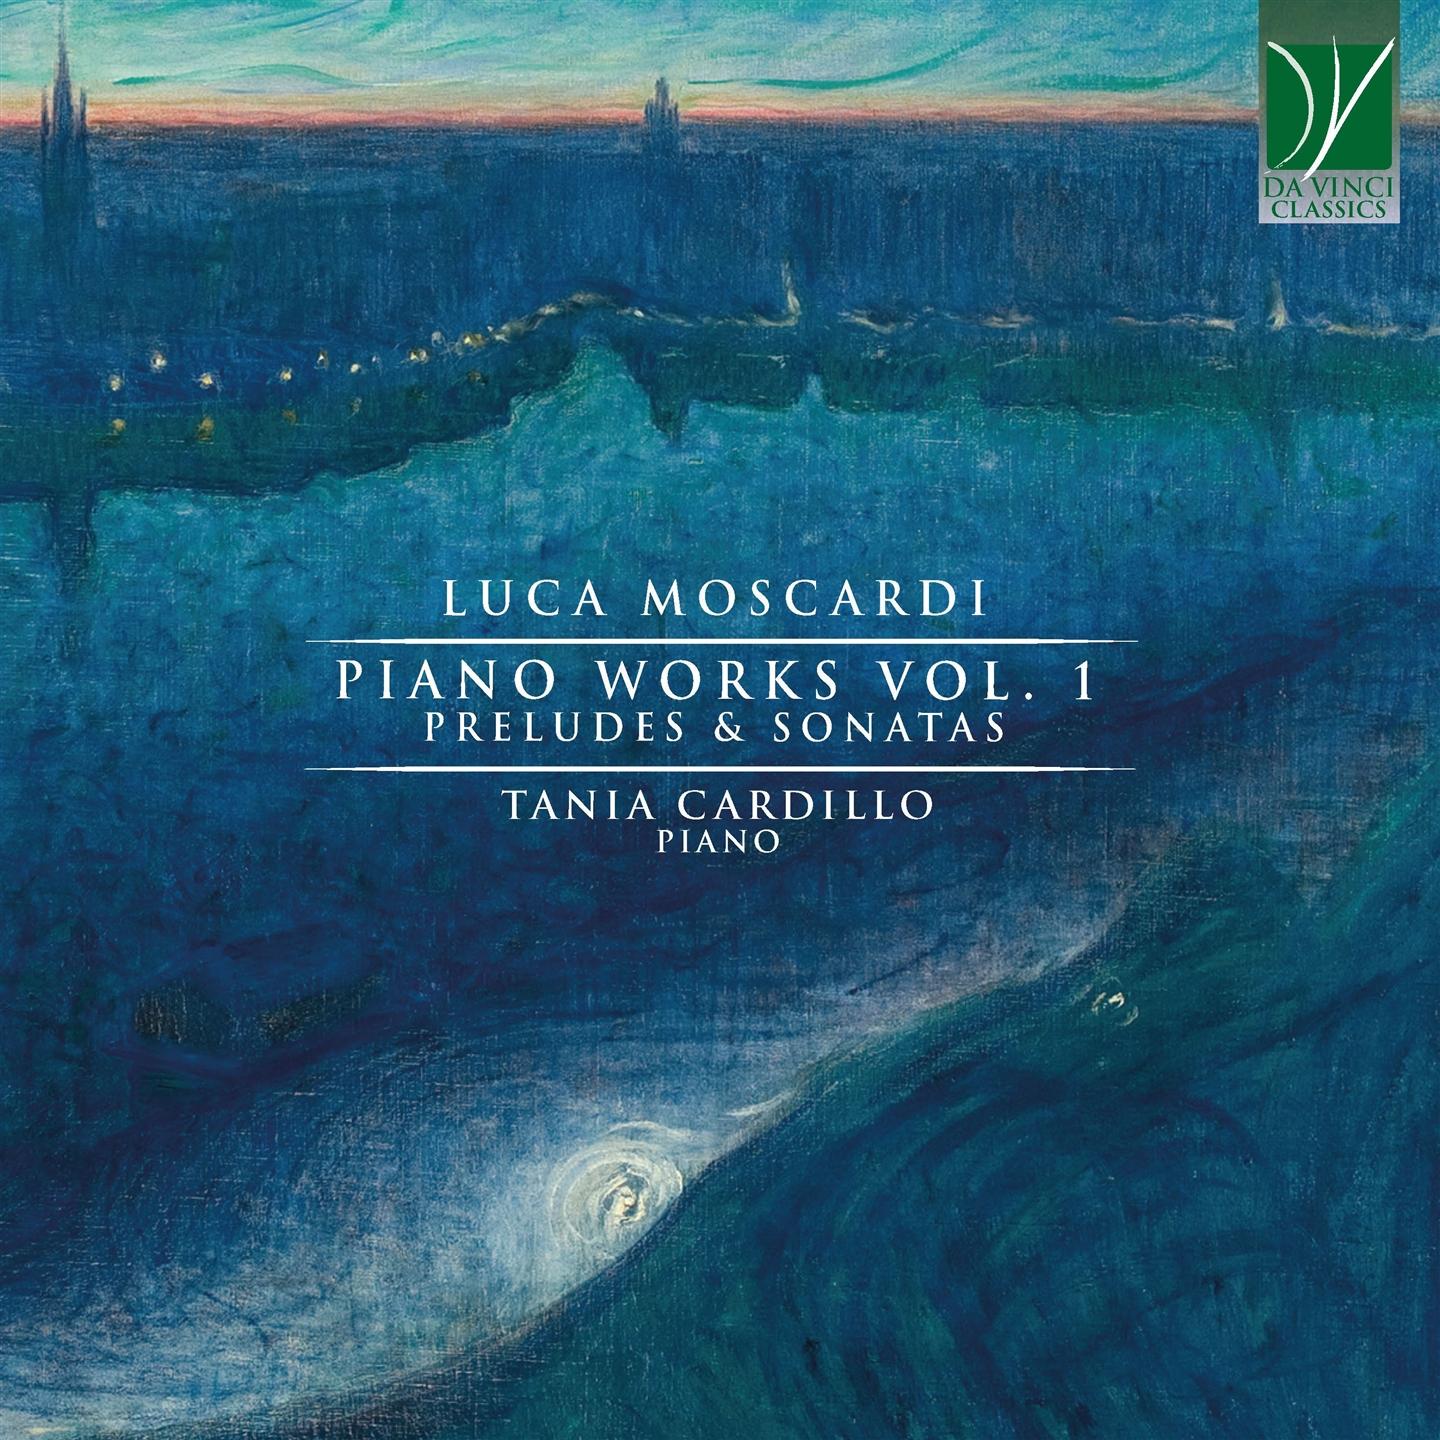 Tania (Piano) Cardillo - Moscardi: Piano Music Vol. 1, Preludes & Sonatas - Picture 1 of 1